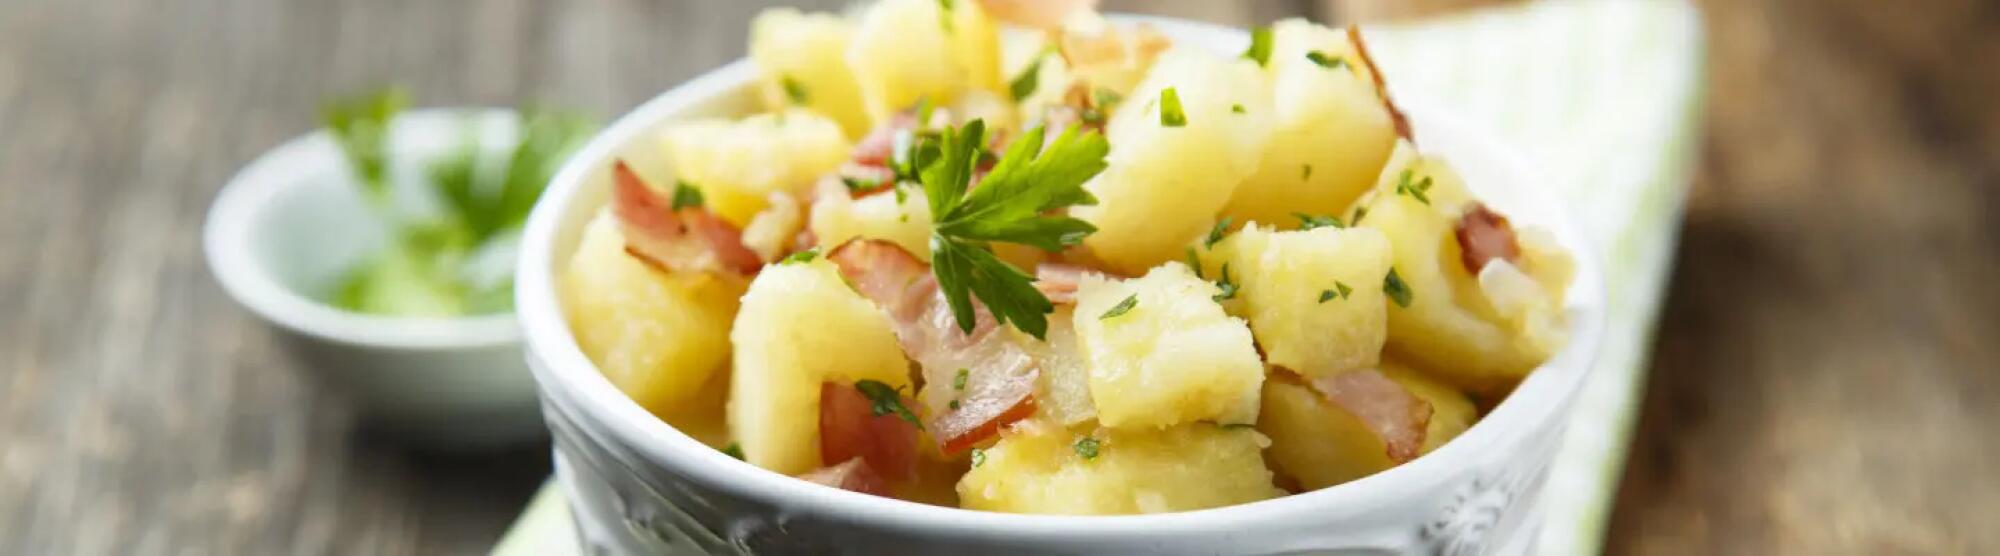 Recette : Salade de pomme de terre au fromage de brebis